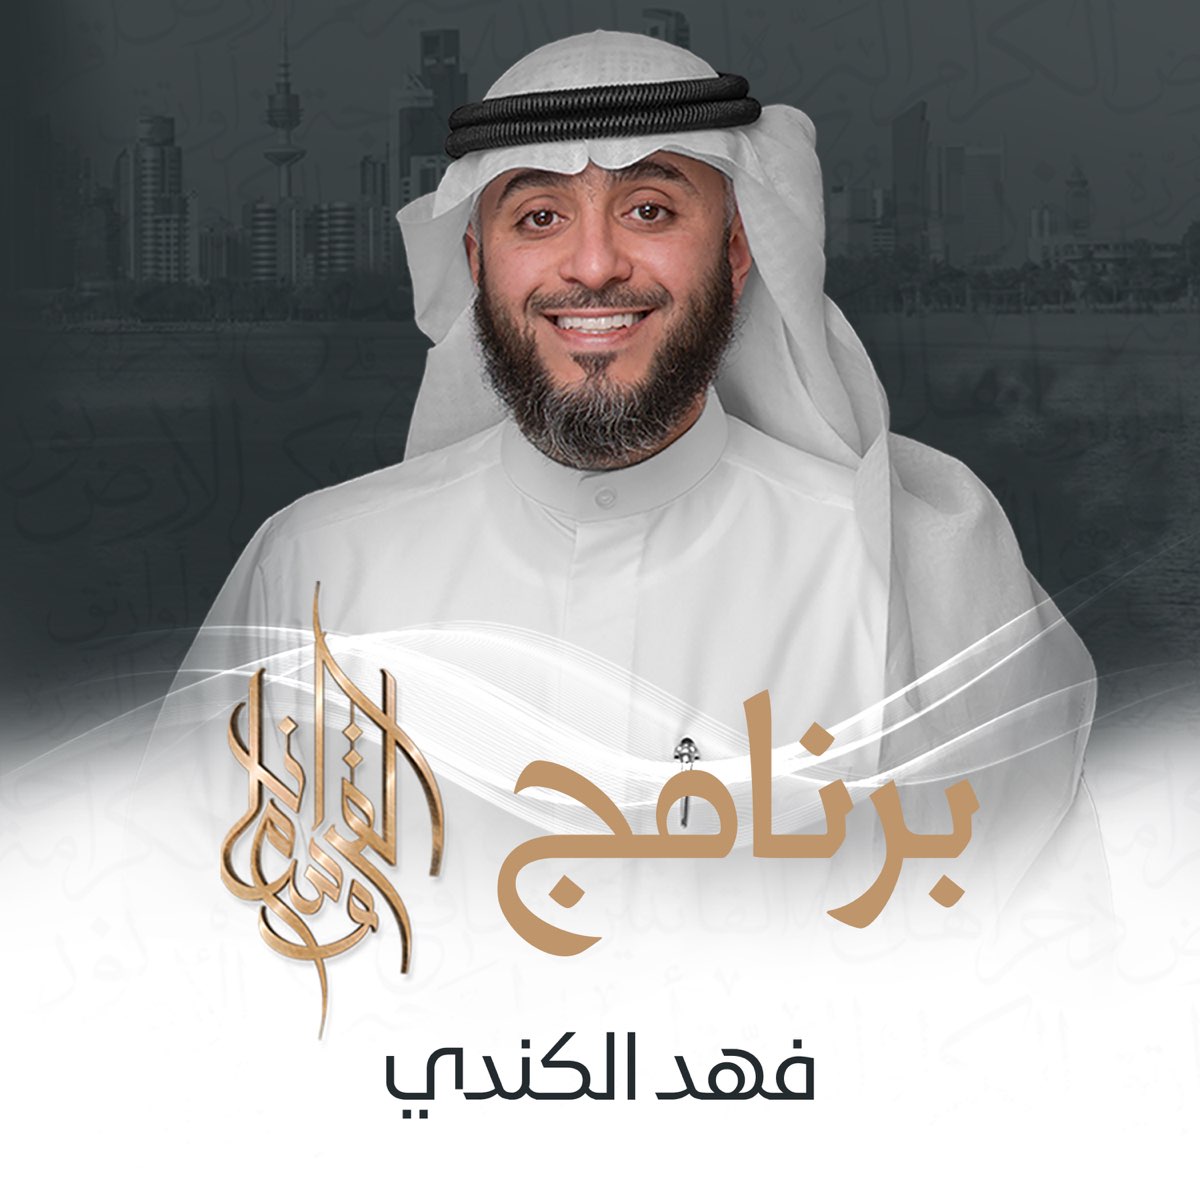 برنامج وسام القرآن - Album by فهد الكندري - Apple Music